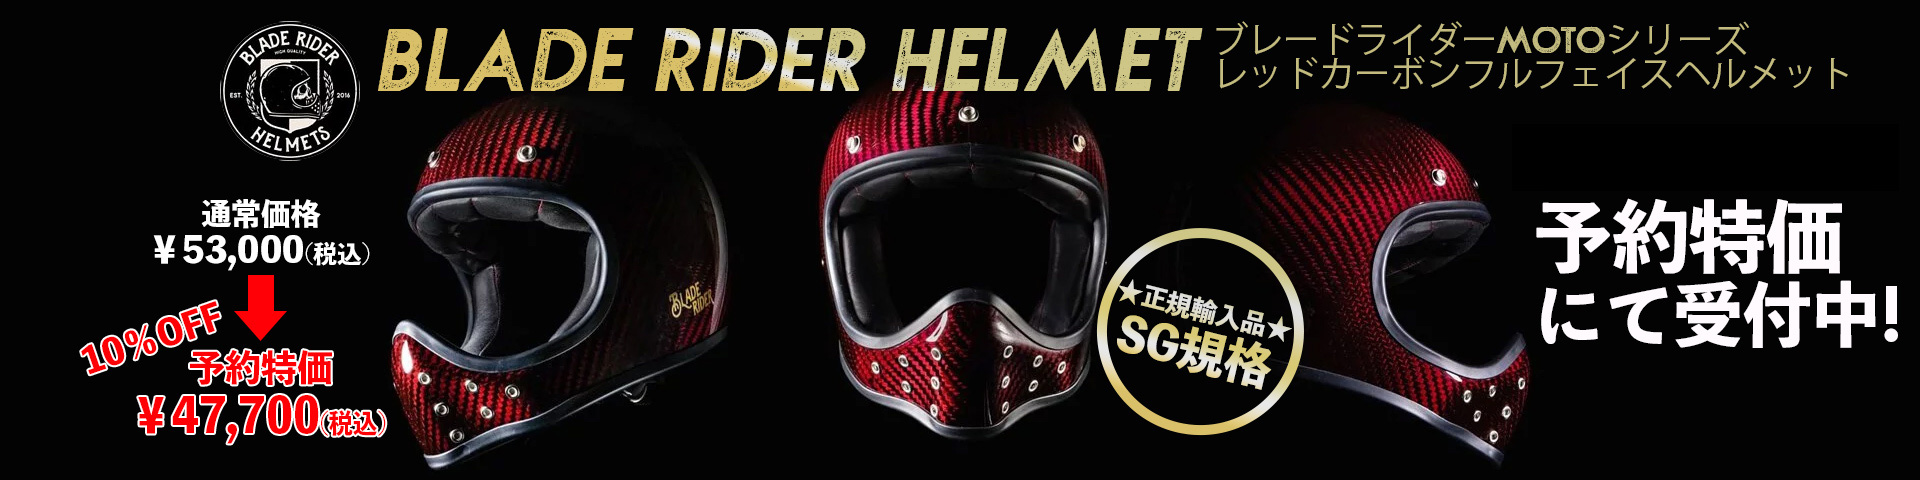 【SG規格・予約特価販売】BLADE RIDER HELMET■ブレードライダー MOTOシリーズ レッドカーボンフルフェイスヘルメット